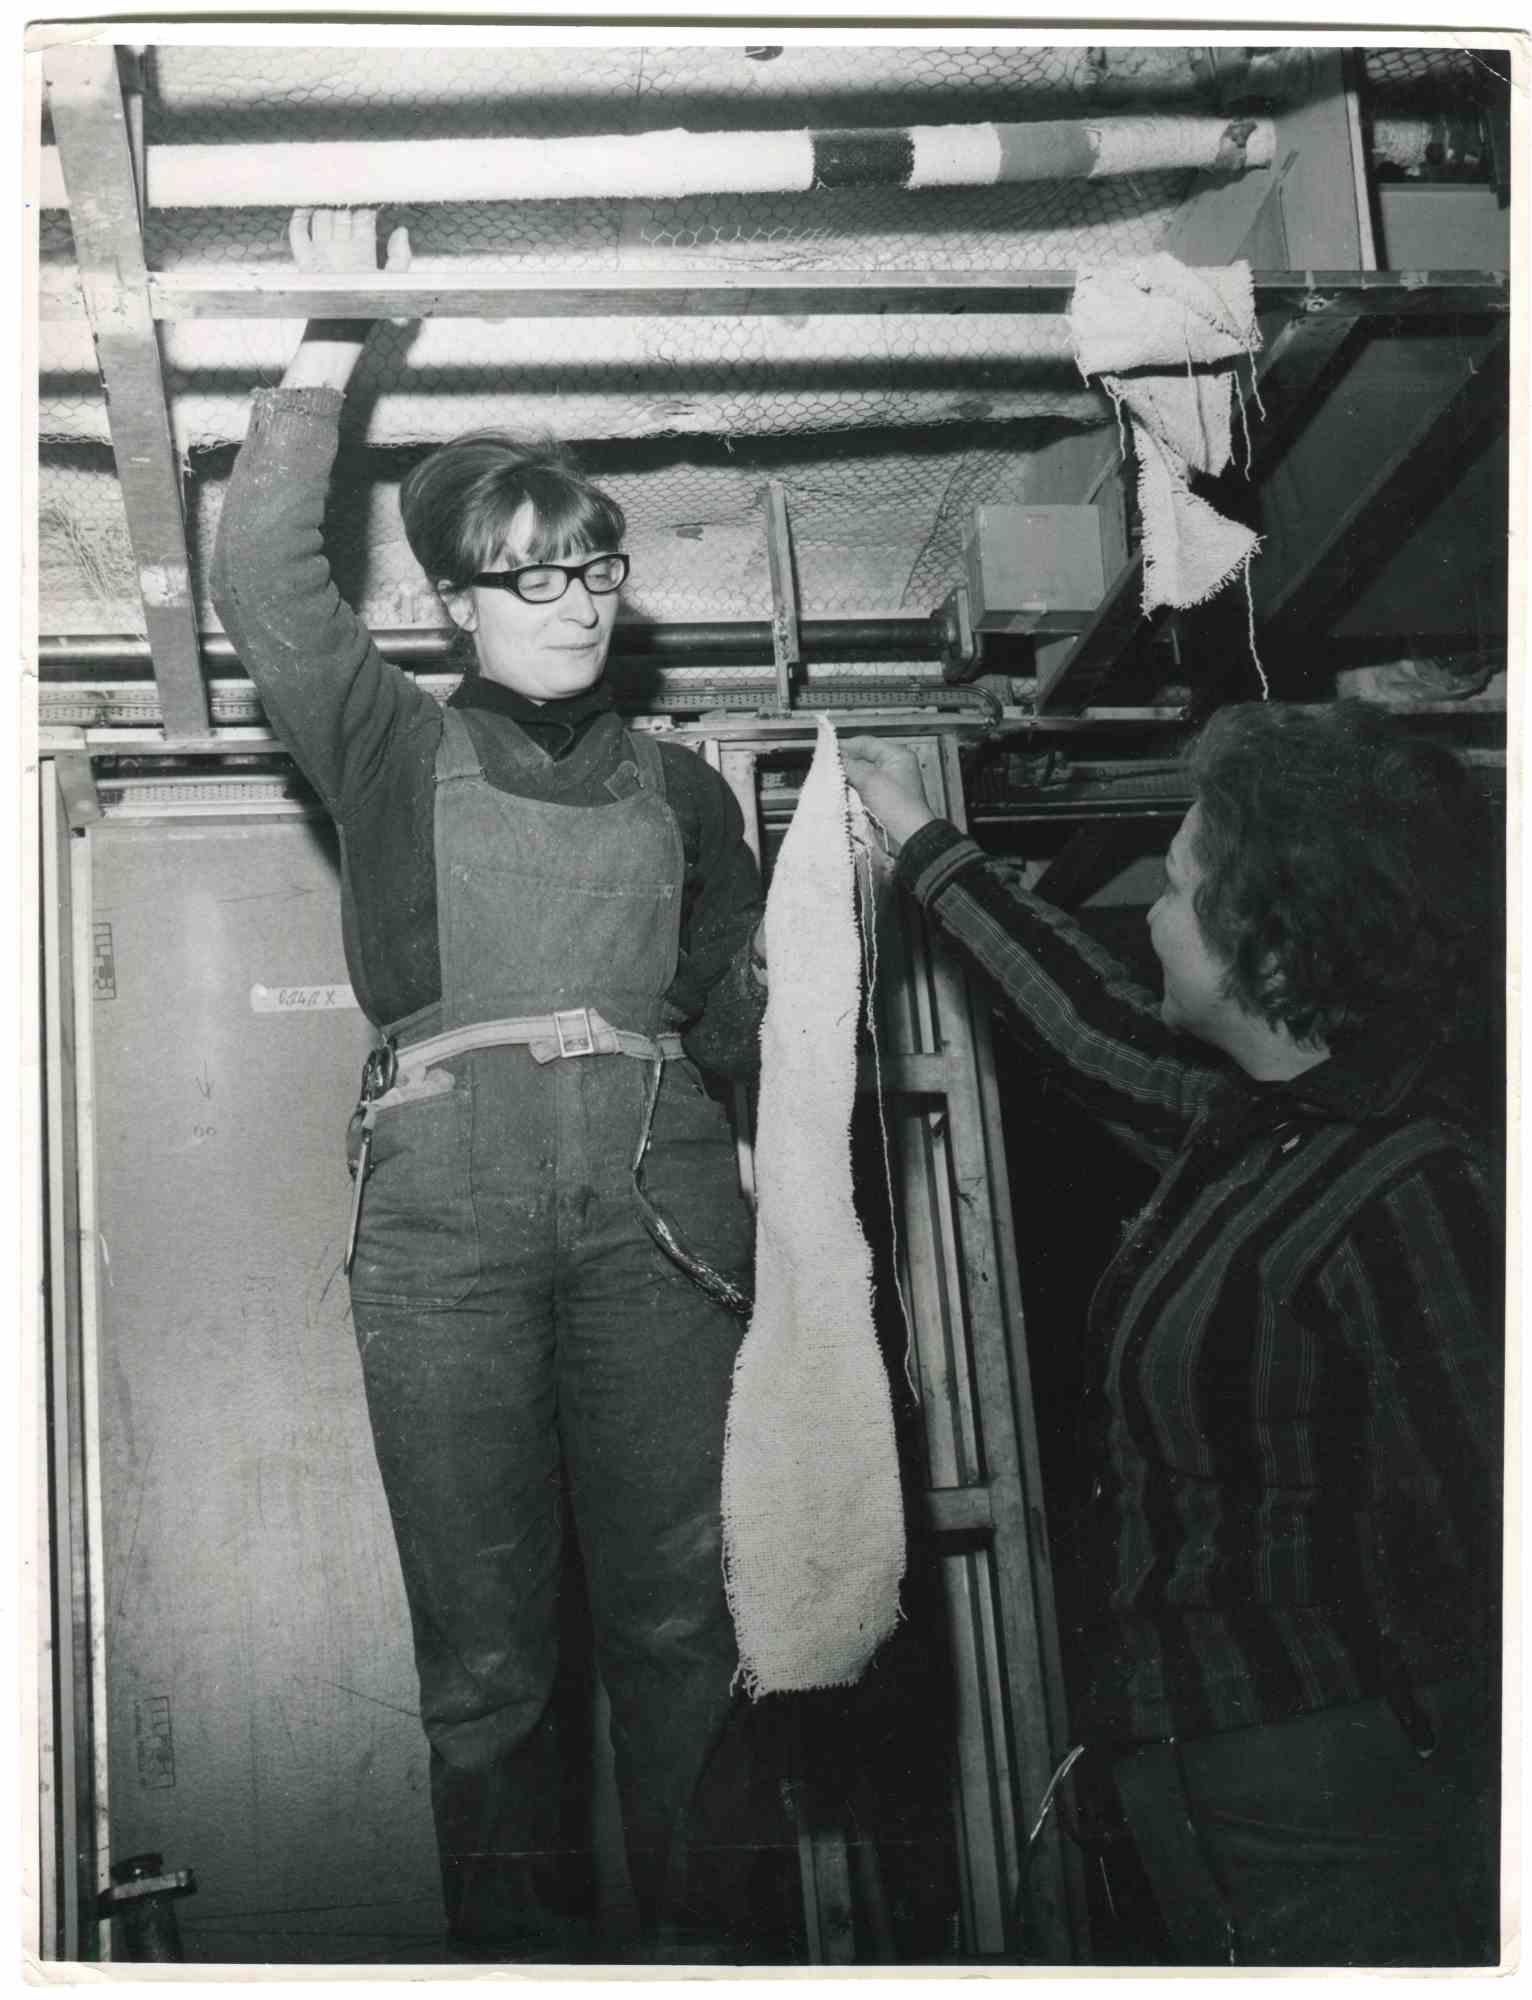 Women at Work – Historische Fotografie über die Rechte von Frauen – 1965